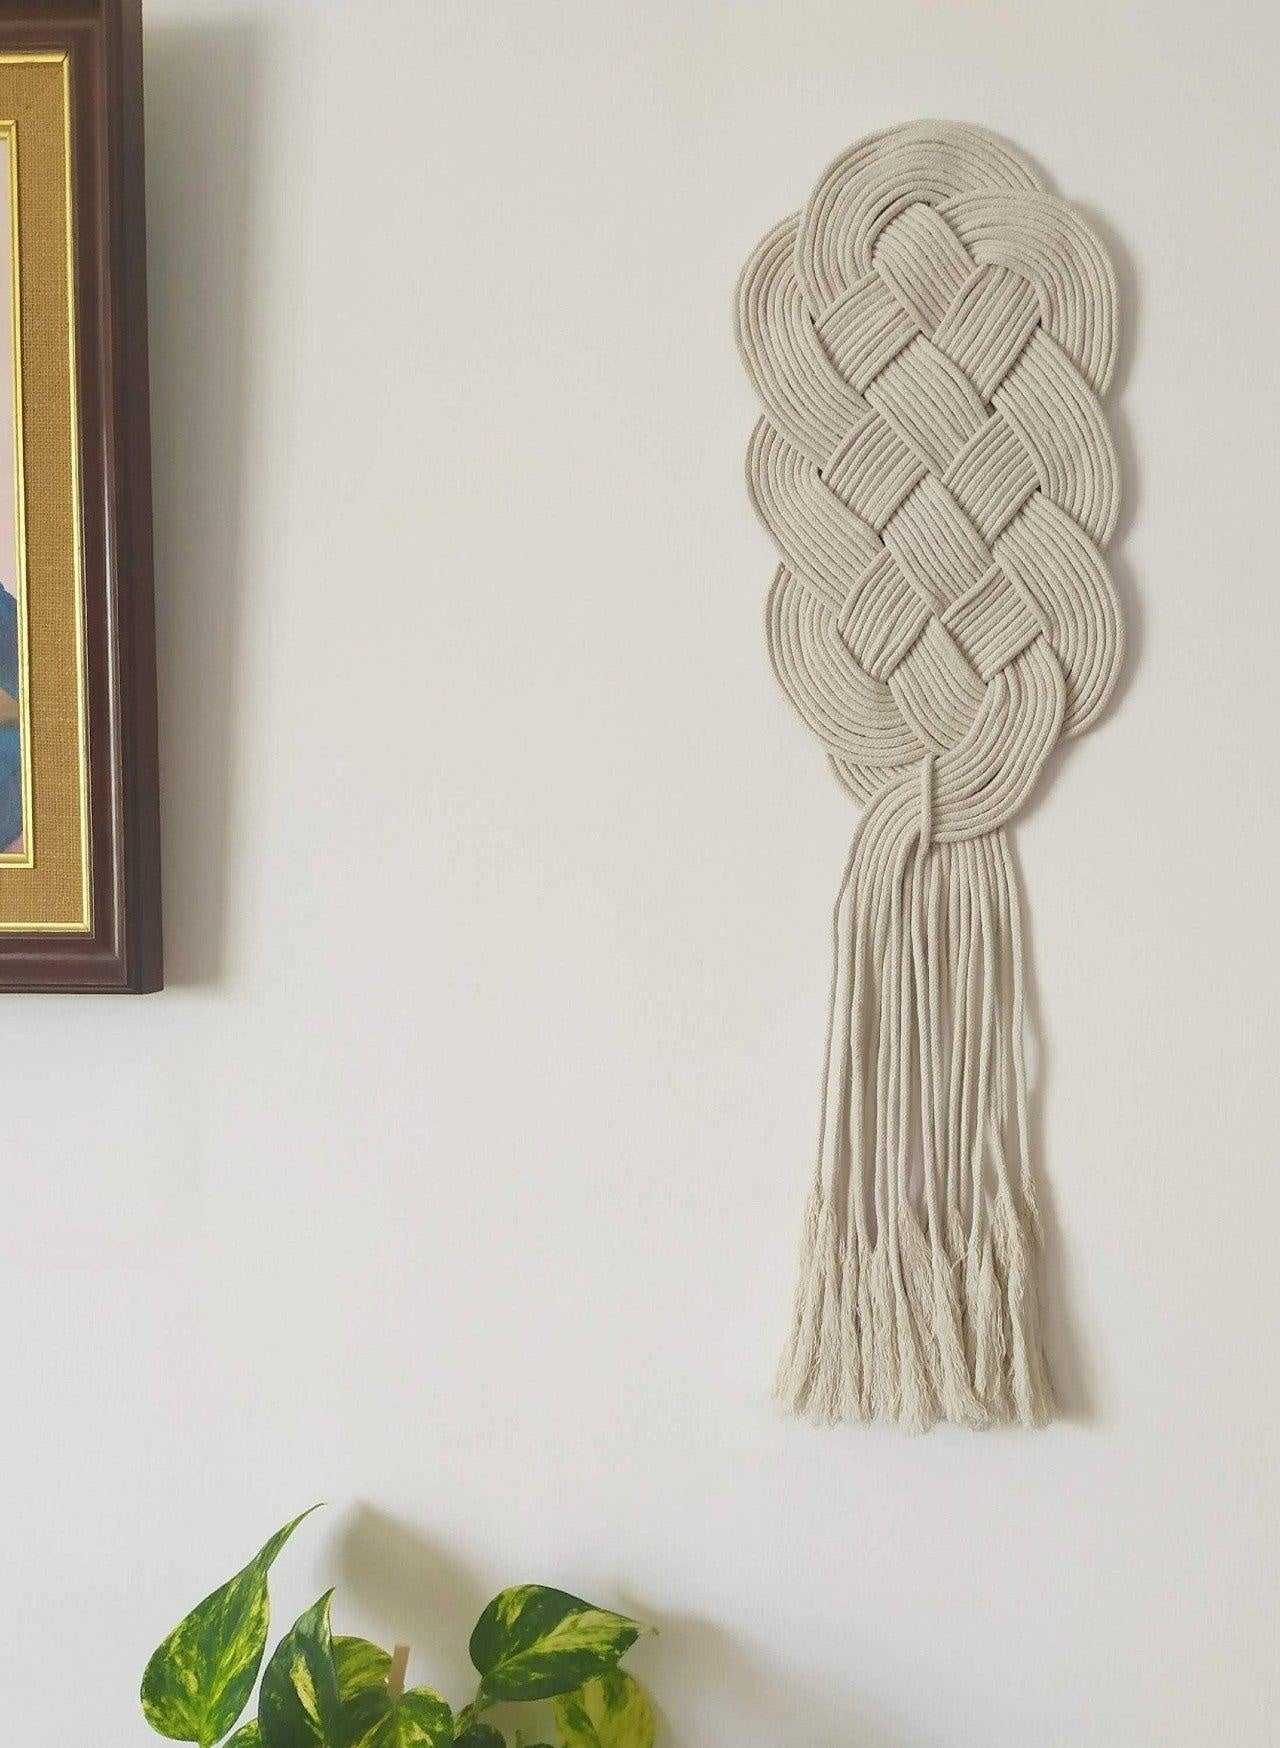 Tapisserie macramé nouée pour mur avec noeud celtique protecteur de la maison.